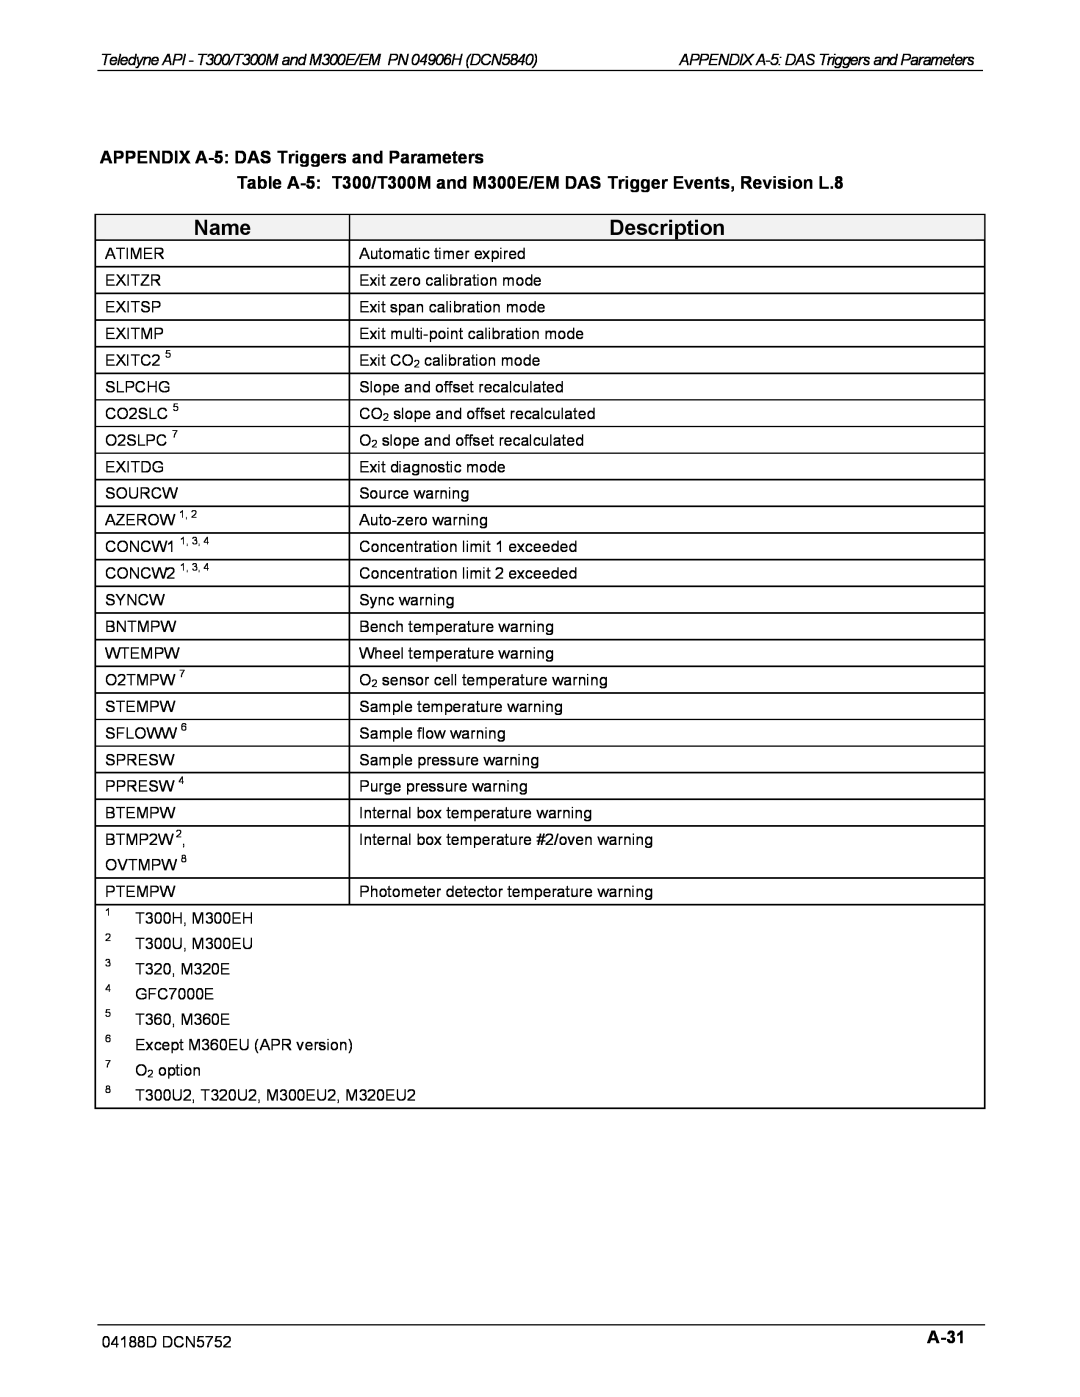 Teledyne M300EM operation manual Name, Description, APPENDIX A-5:DAS Triggers and Parameters, A-31 